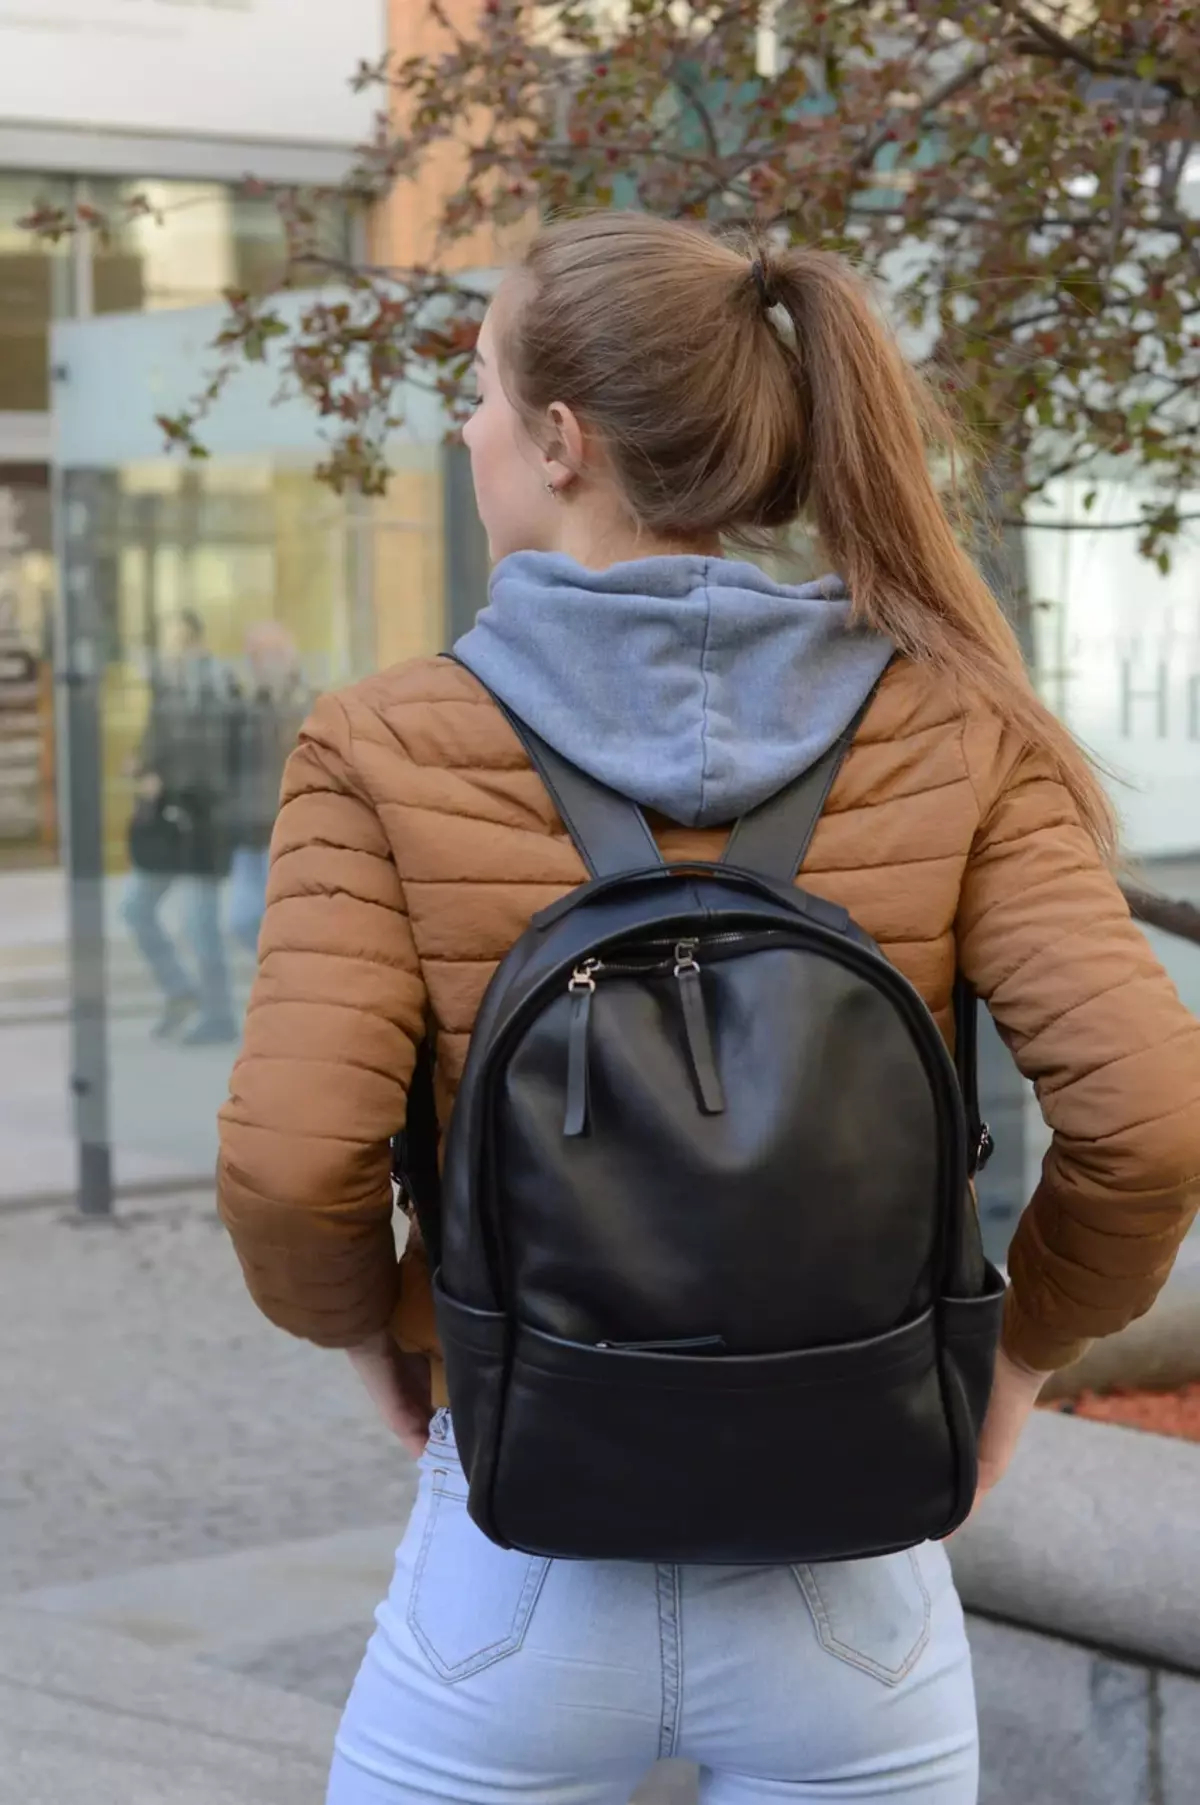 City Ryggsäckar: Bästa kvinnors eleganta ryggsäckar för staden, topp casual fashionabla textilier och andra modeller, översikt över de mest praktiska alternativen. 15350_3